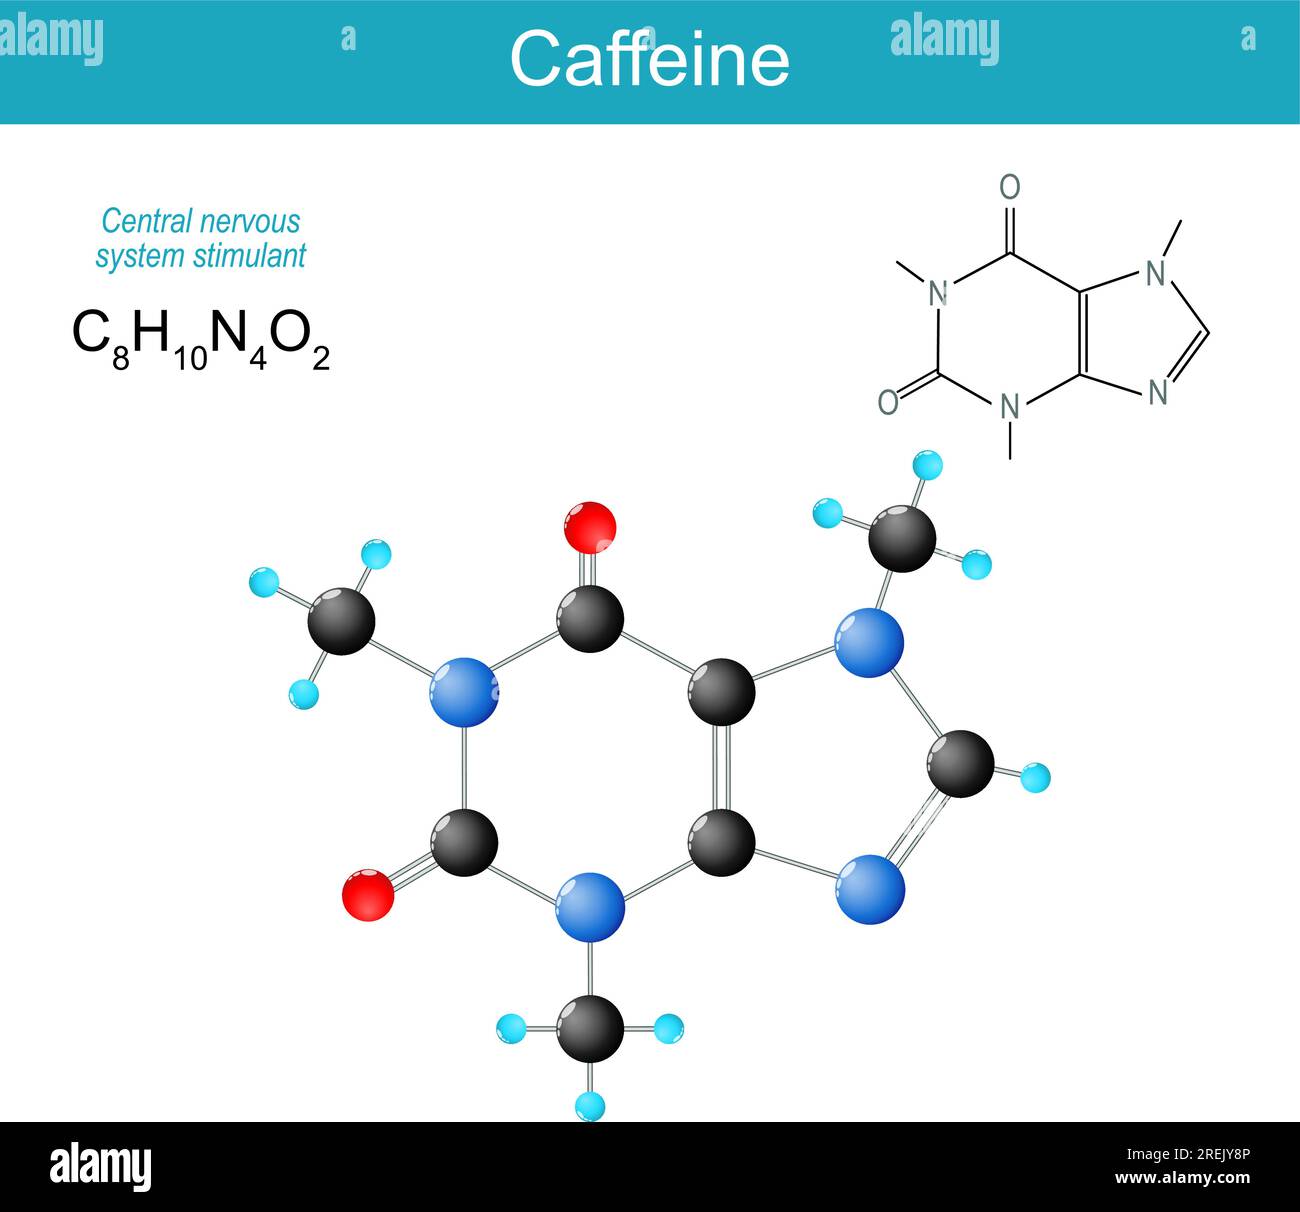 molécule de caféine. Formule structurale chimique moléculaire et modèle de stimulant du SNC du système nerveux central de la classe des méthylxanthines. Vecteur Illustration de Vecteur